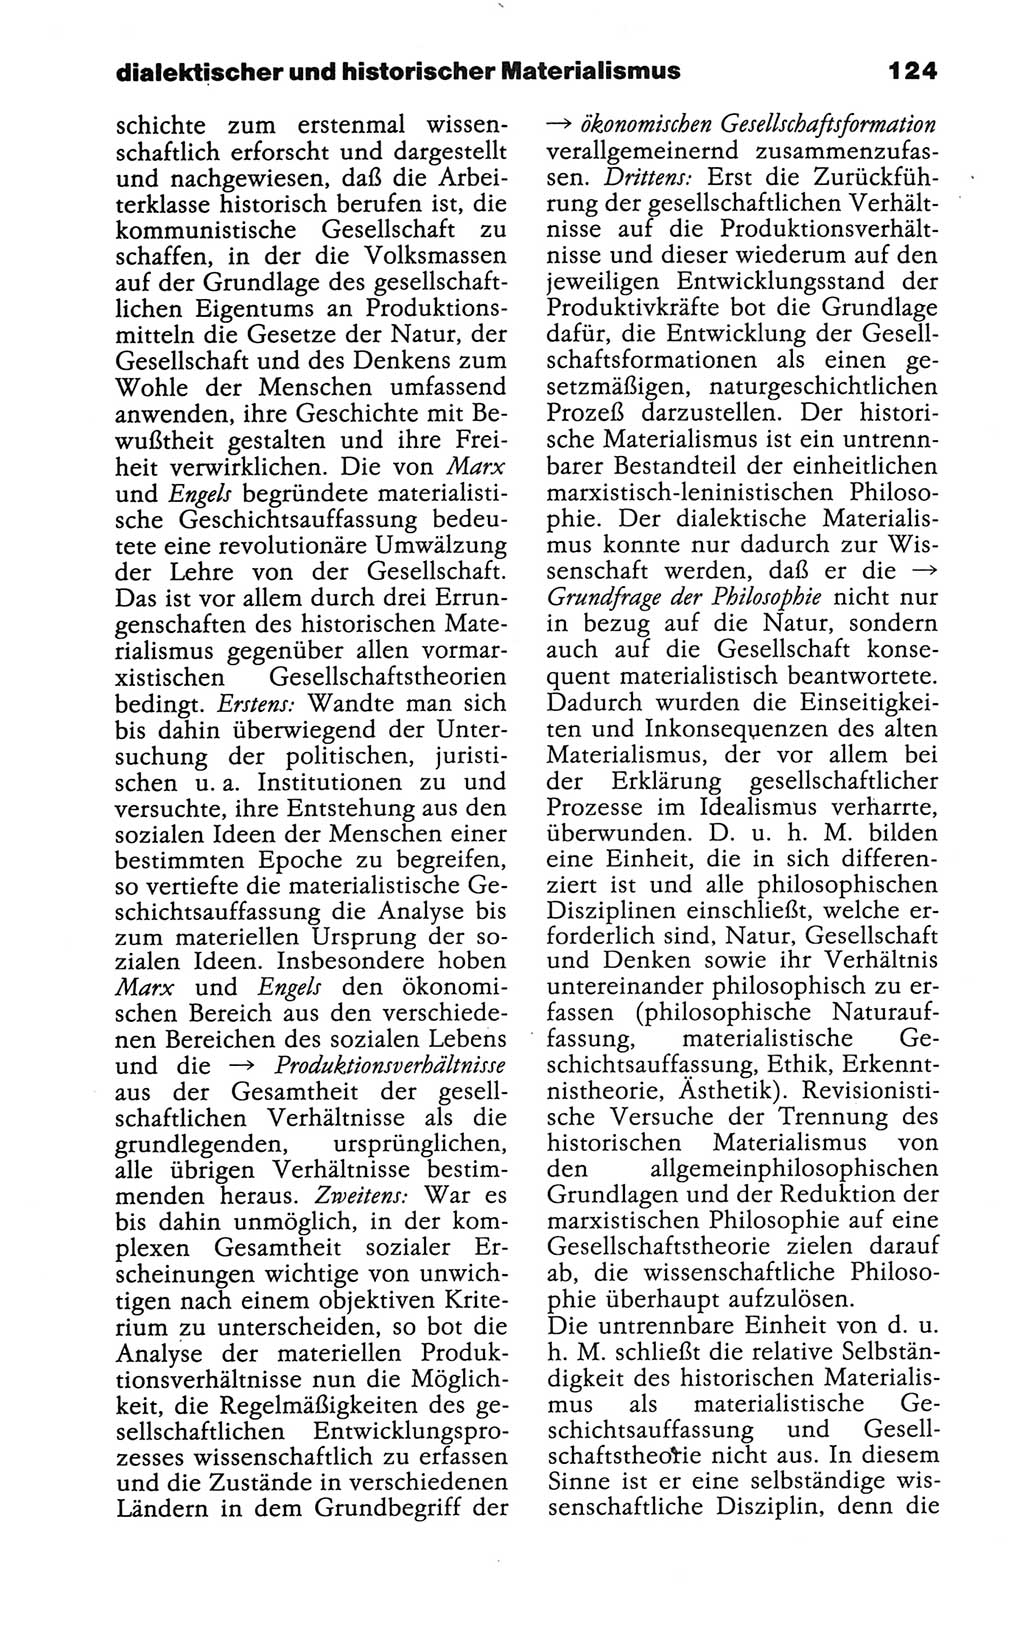 Wörterbuch der marxistisch-leninistischen Philosophie [Deutsche Demokratische Republik (DDR)] 1986, Seite 124 (Wb. ML Phil. DDR 1986, S. 124)